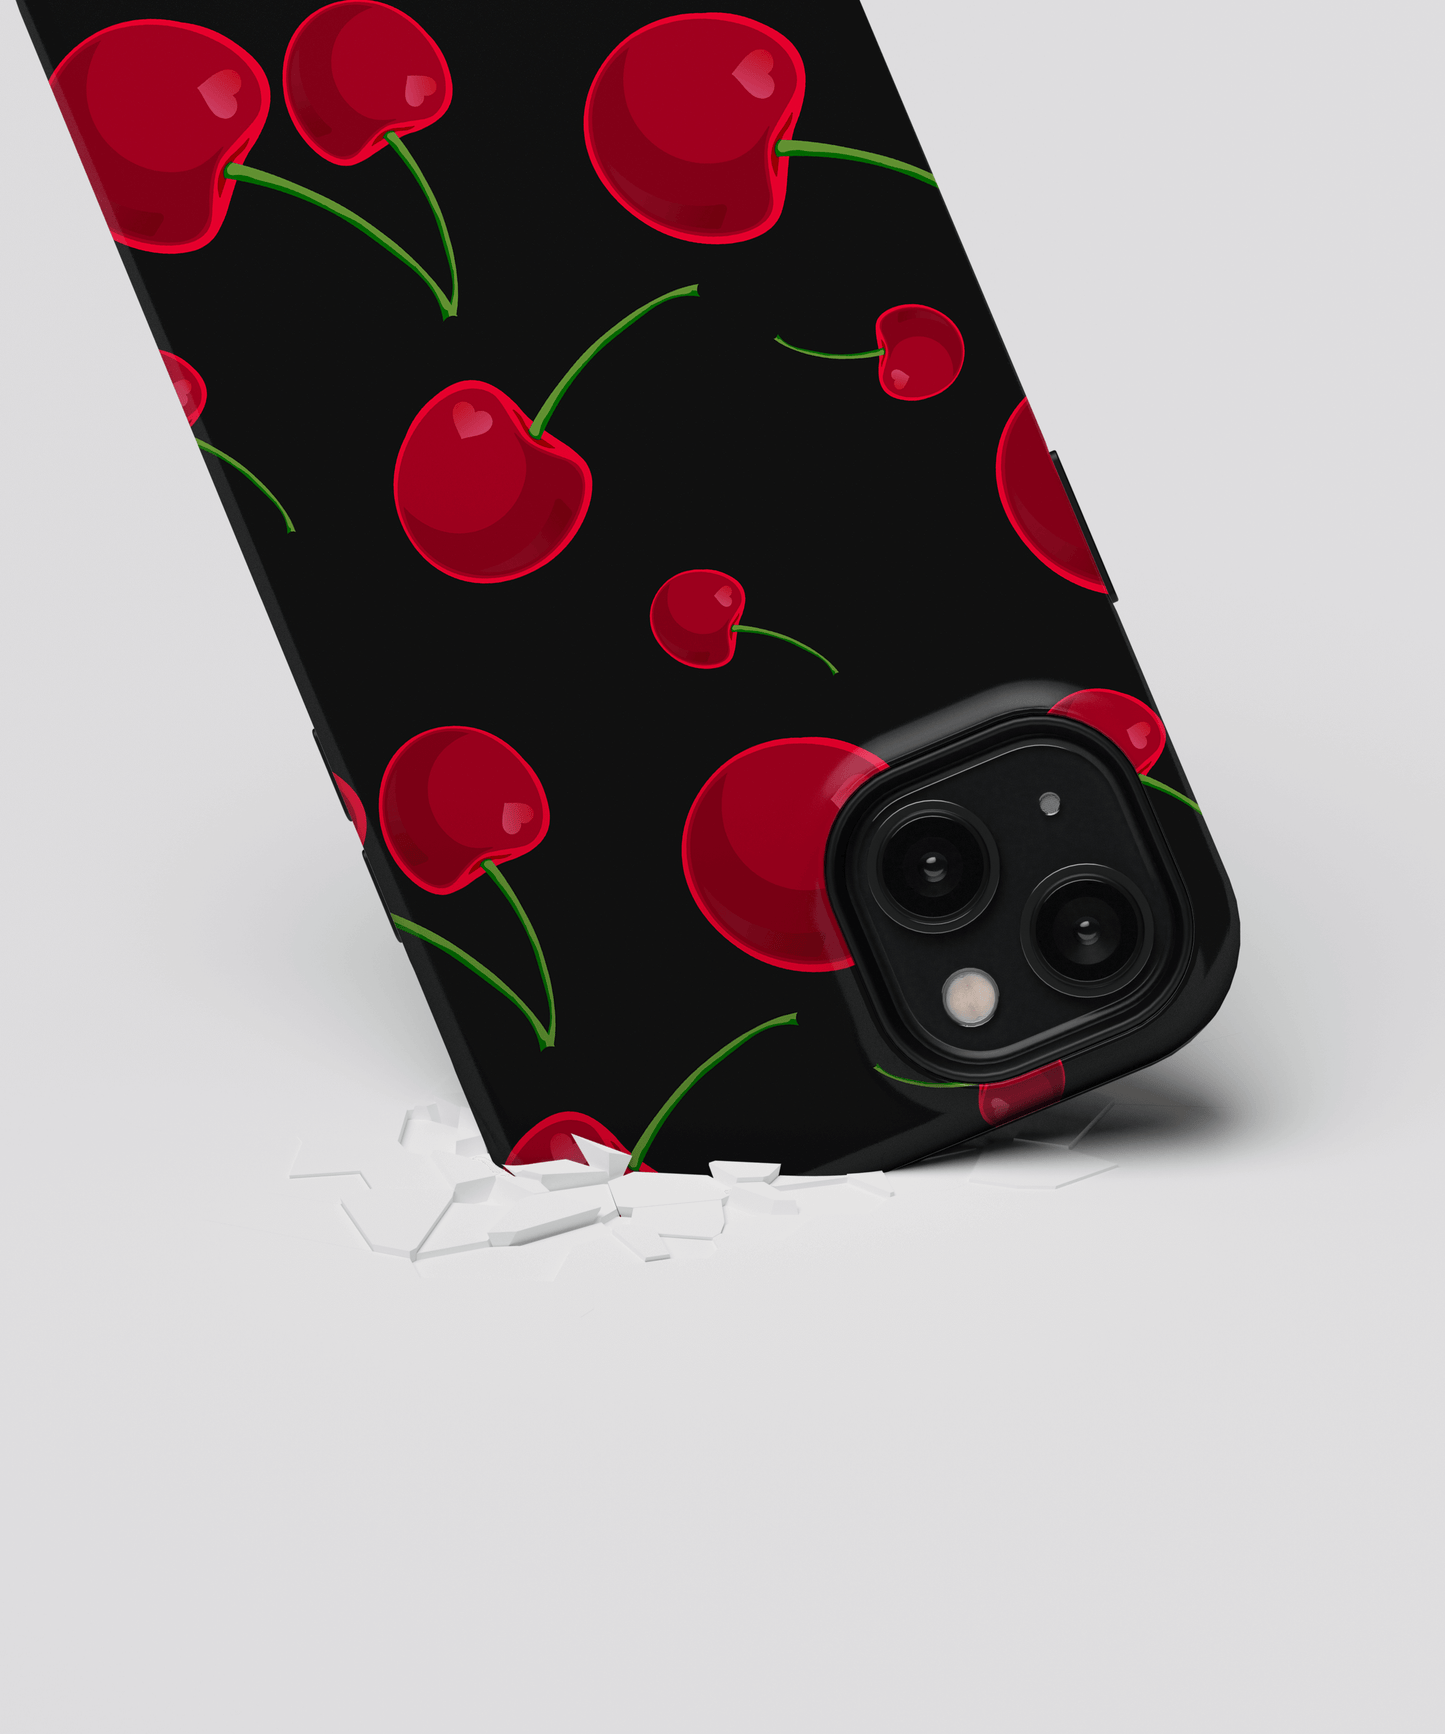 Cherish - Xiaomi Redmi Note 9/9T 4G phone case